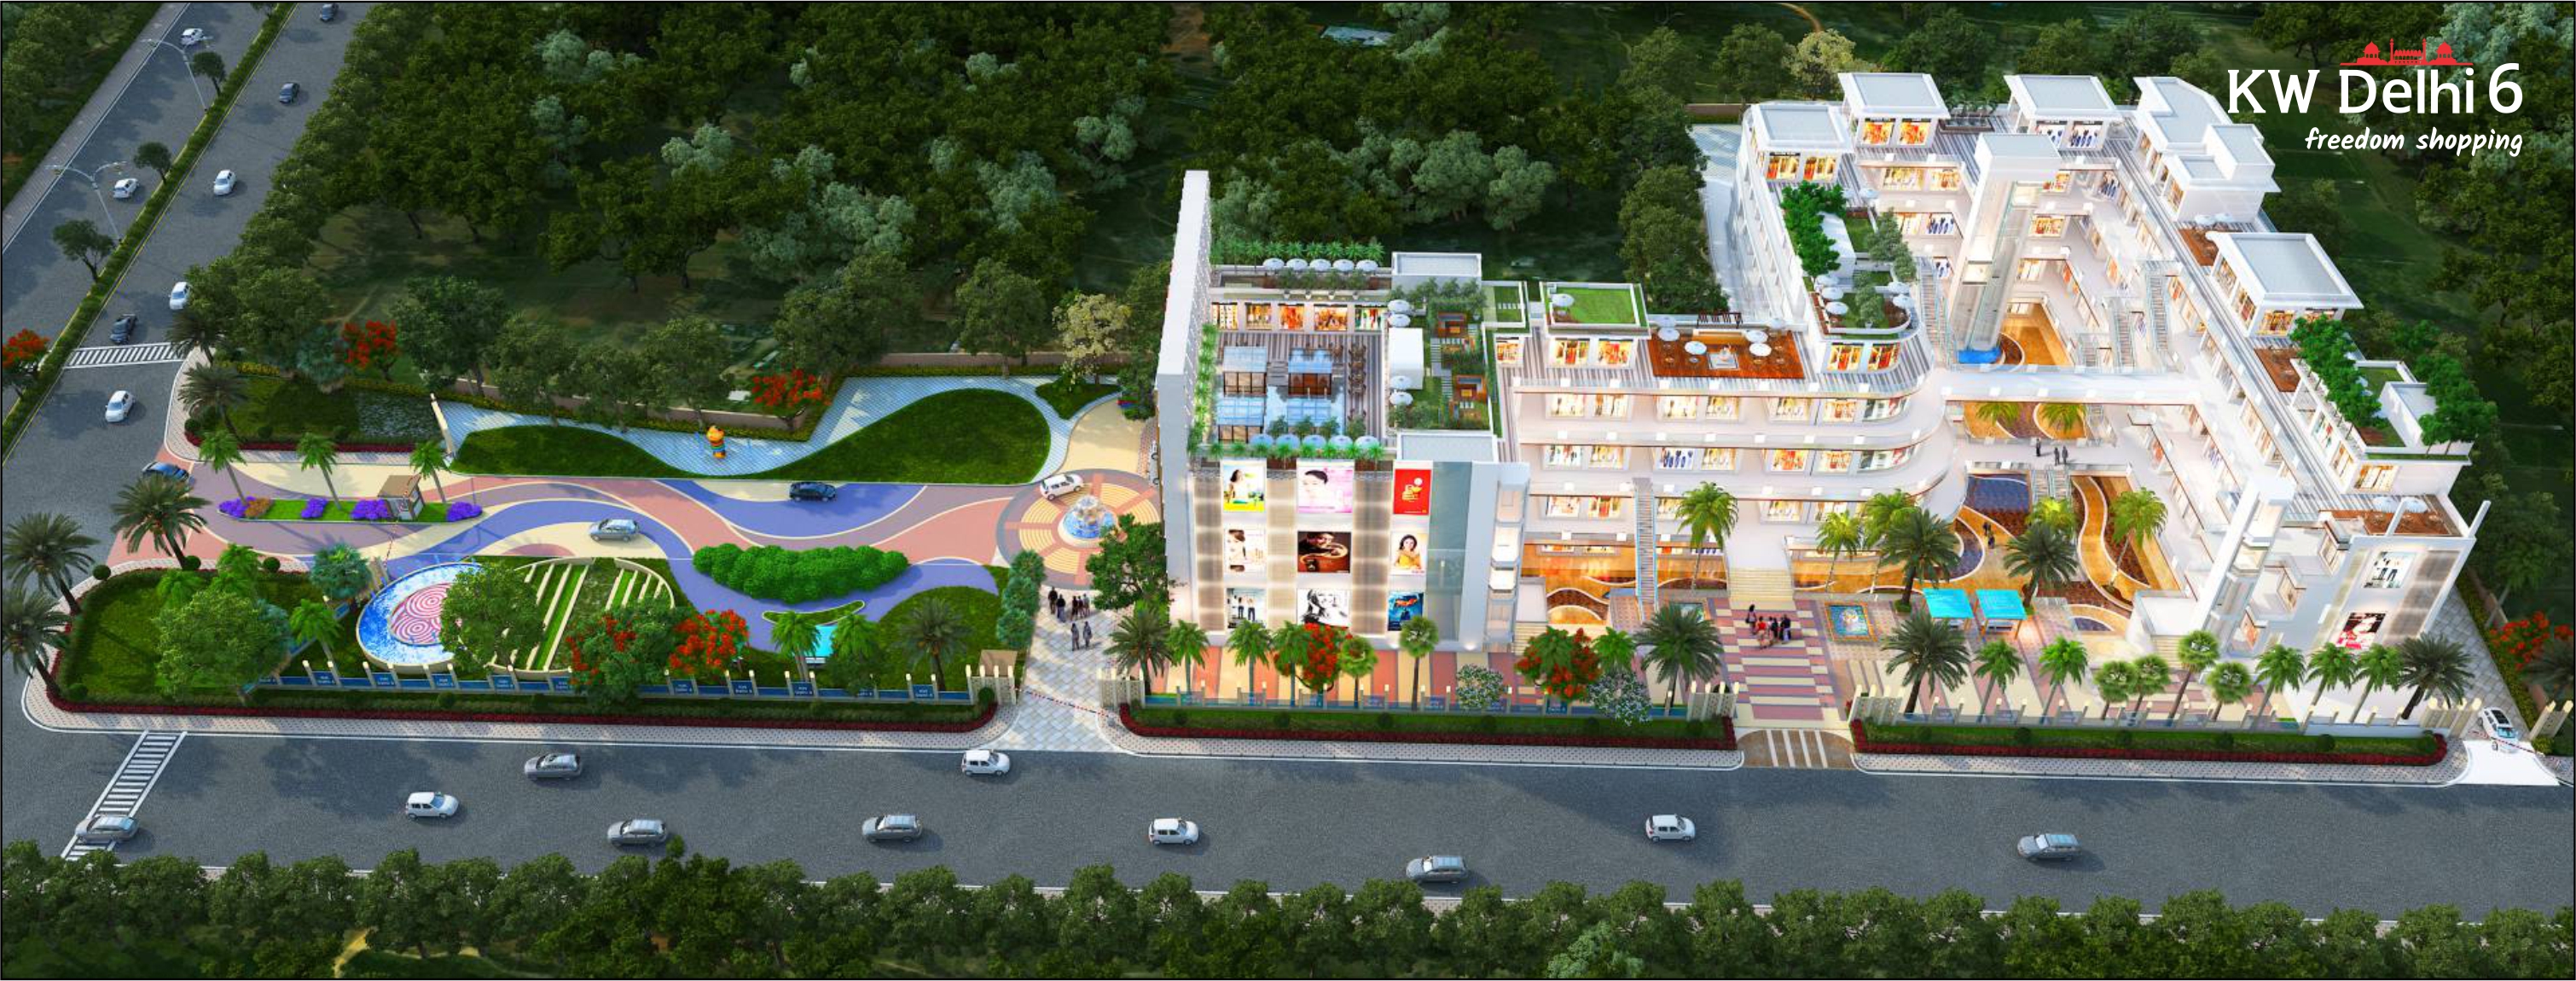 KW Delhi 6 Shopping Complex in Ghazibad - Upper View